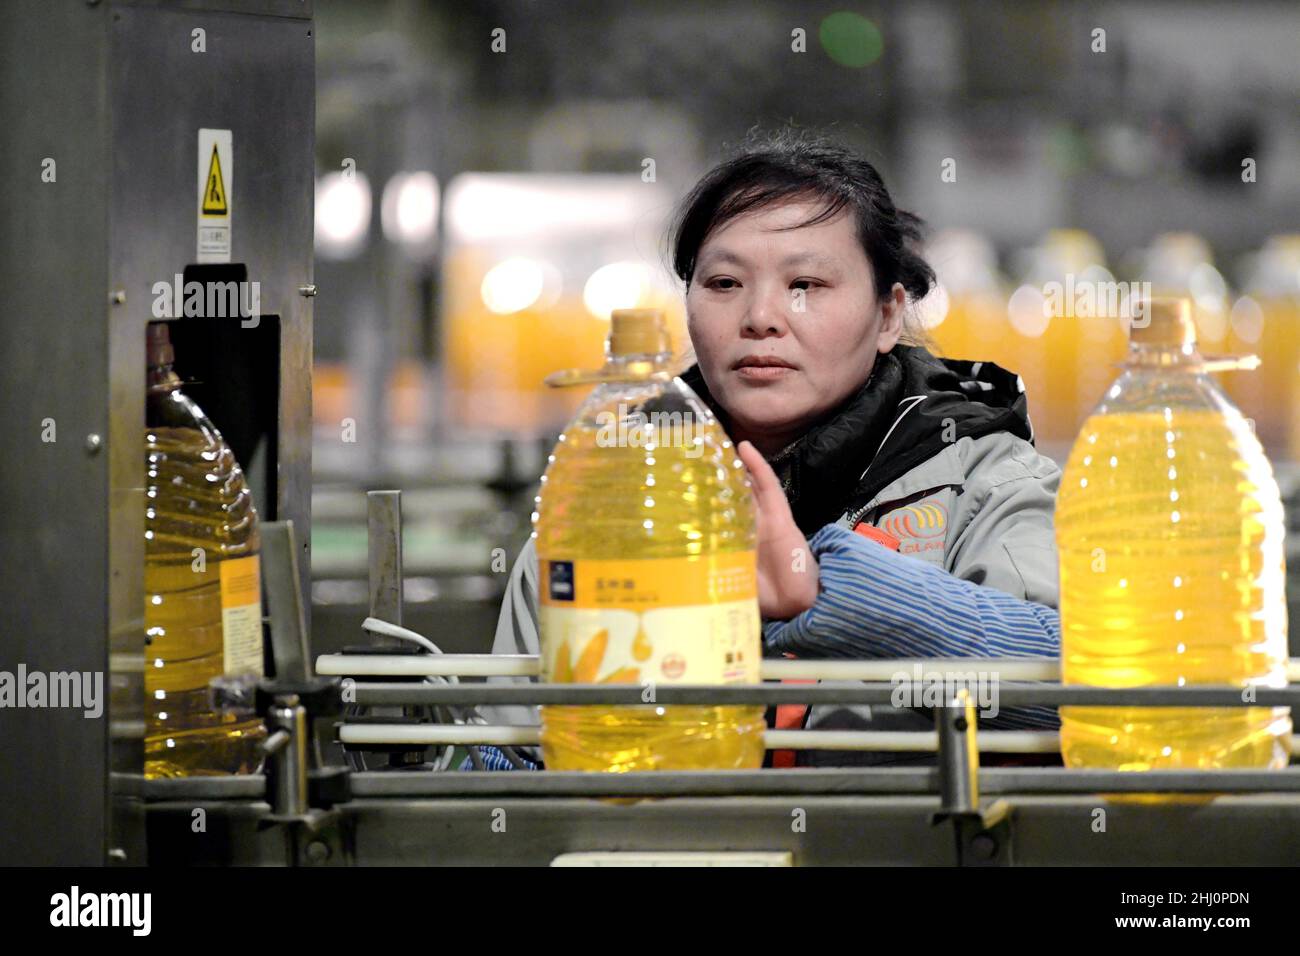 HAI'AN, CINA - 26 GENNAIO 2022 - un operaio lavora in una linea di produzione di riempimento di olio da cucina a Hai 'an, provincia di Jiangsu della Cina orientale, 26 gennaio 2022. Foto Stock